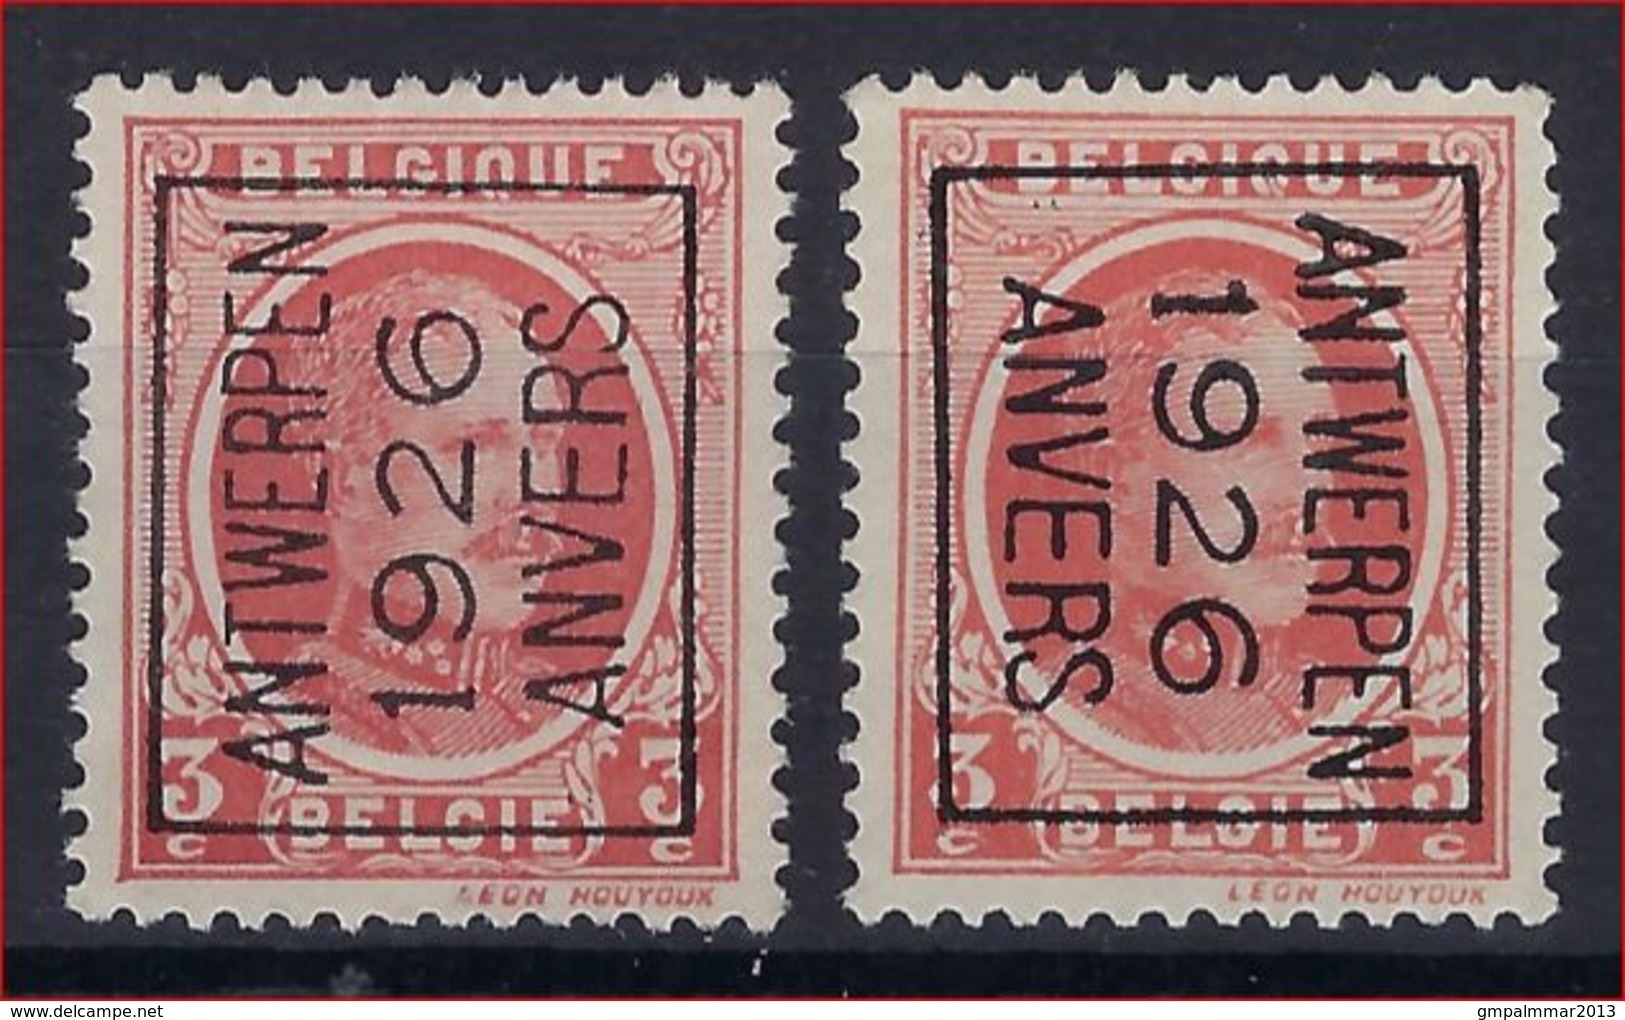 HOUYOUX Nr. 192 België Typografische Voorafstempeling Nr. 138 Posities A + B   ANTWERPEN  1926  ANVERS  ! - Typos 1922-31 (Houyoux)